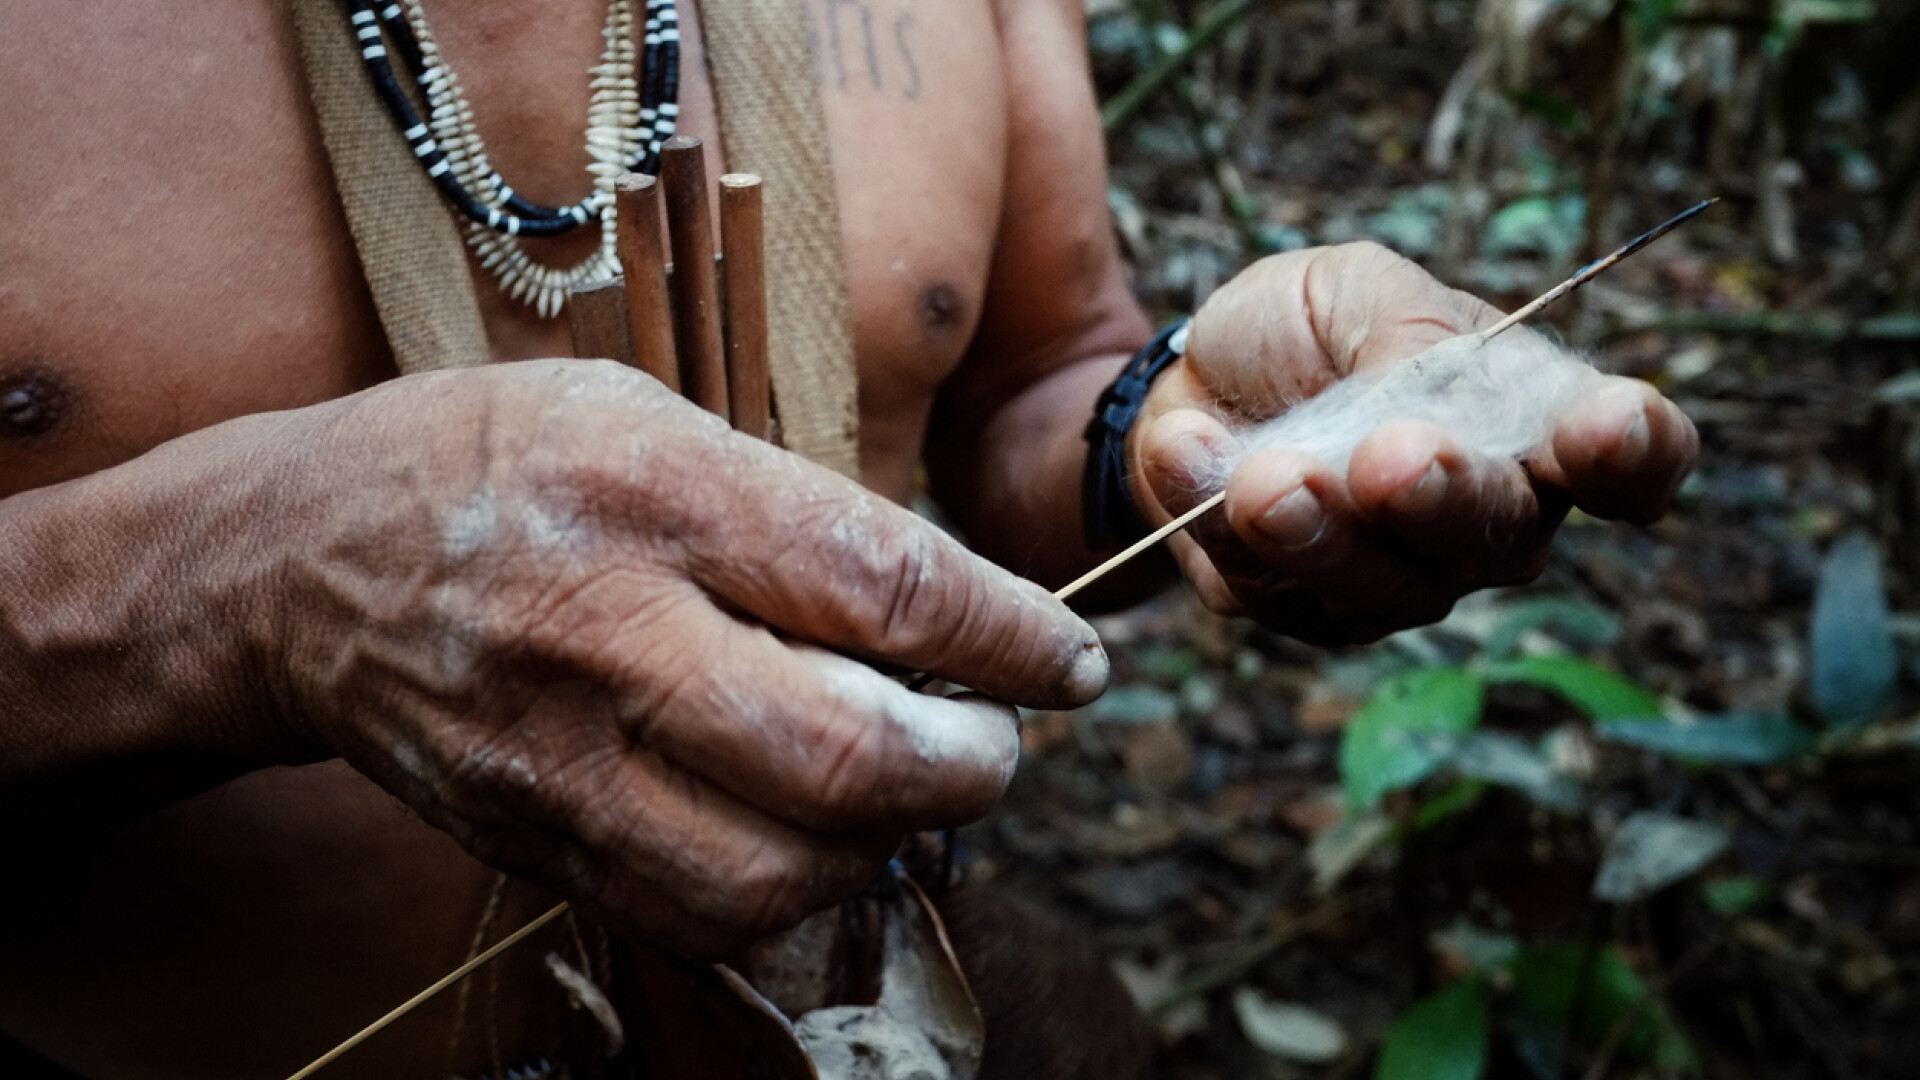 Imagini din interiorul celui mai amenințat trib. Pericolele ascunse în pădurea amazoniană